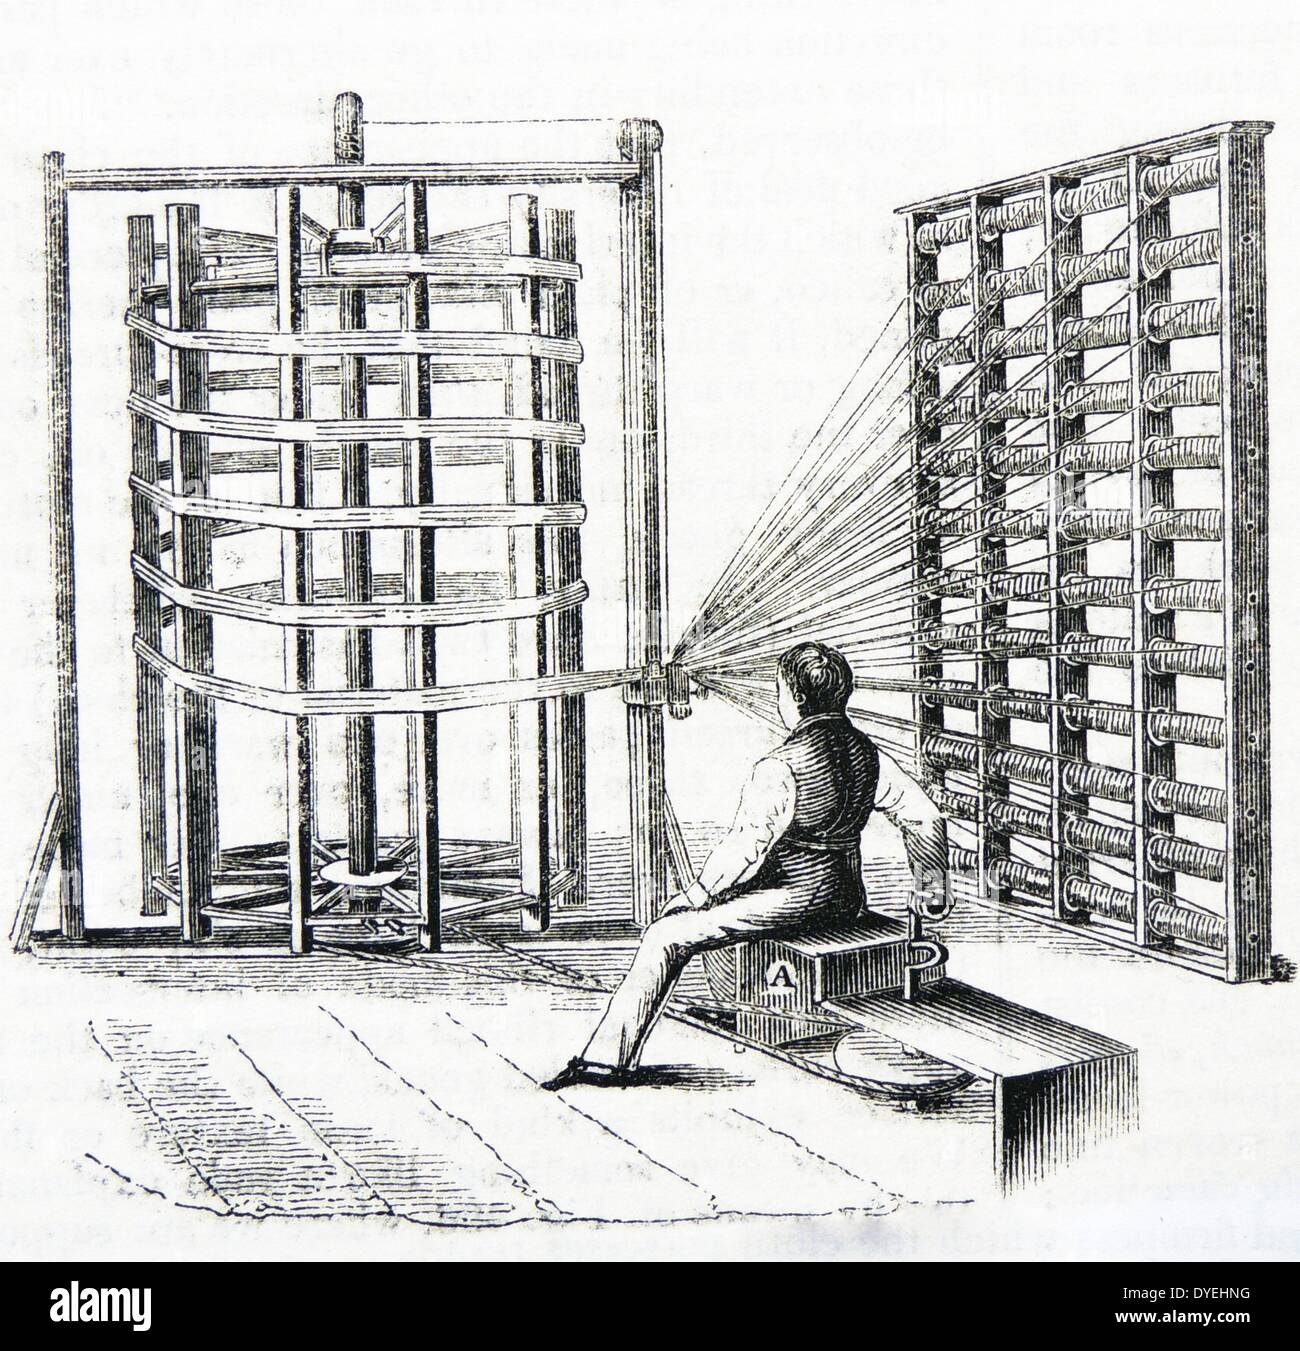 Warping Rahmen für feine Garne aus Baumwolle, die bei der Herstellung der Musselin verwendet. Kupferstich, London, 1851. Stockfoto